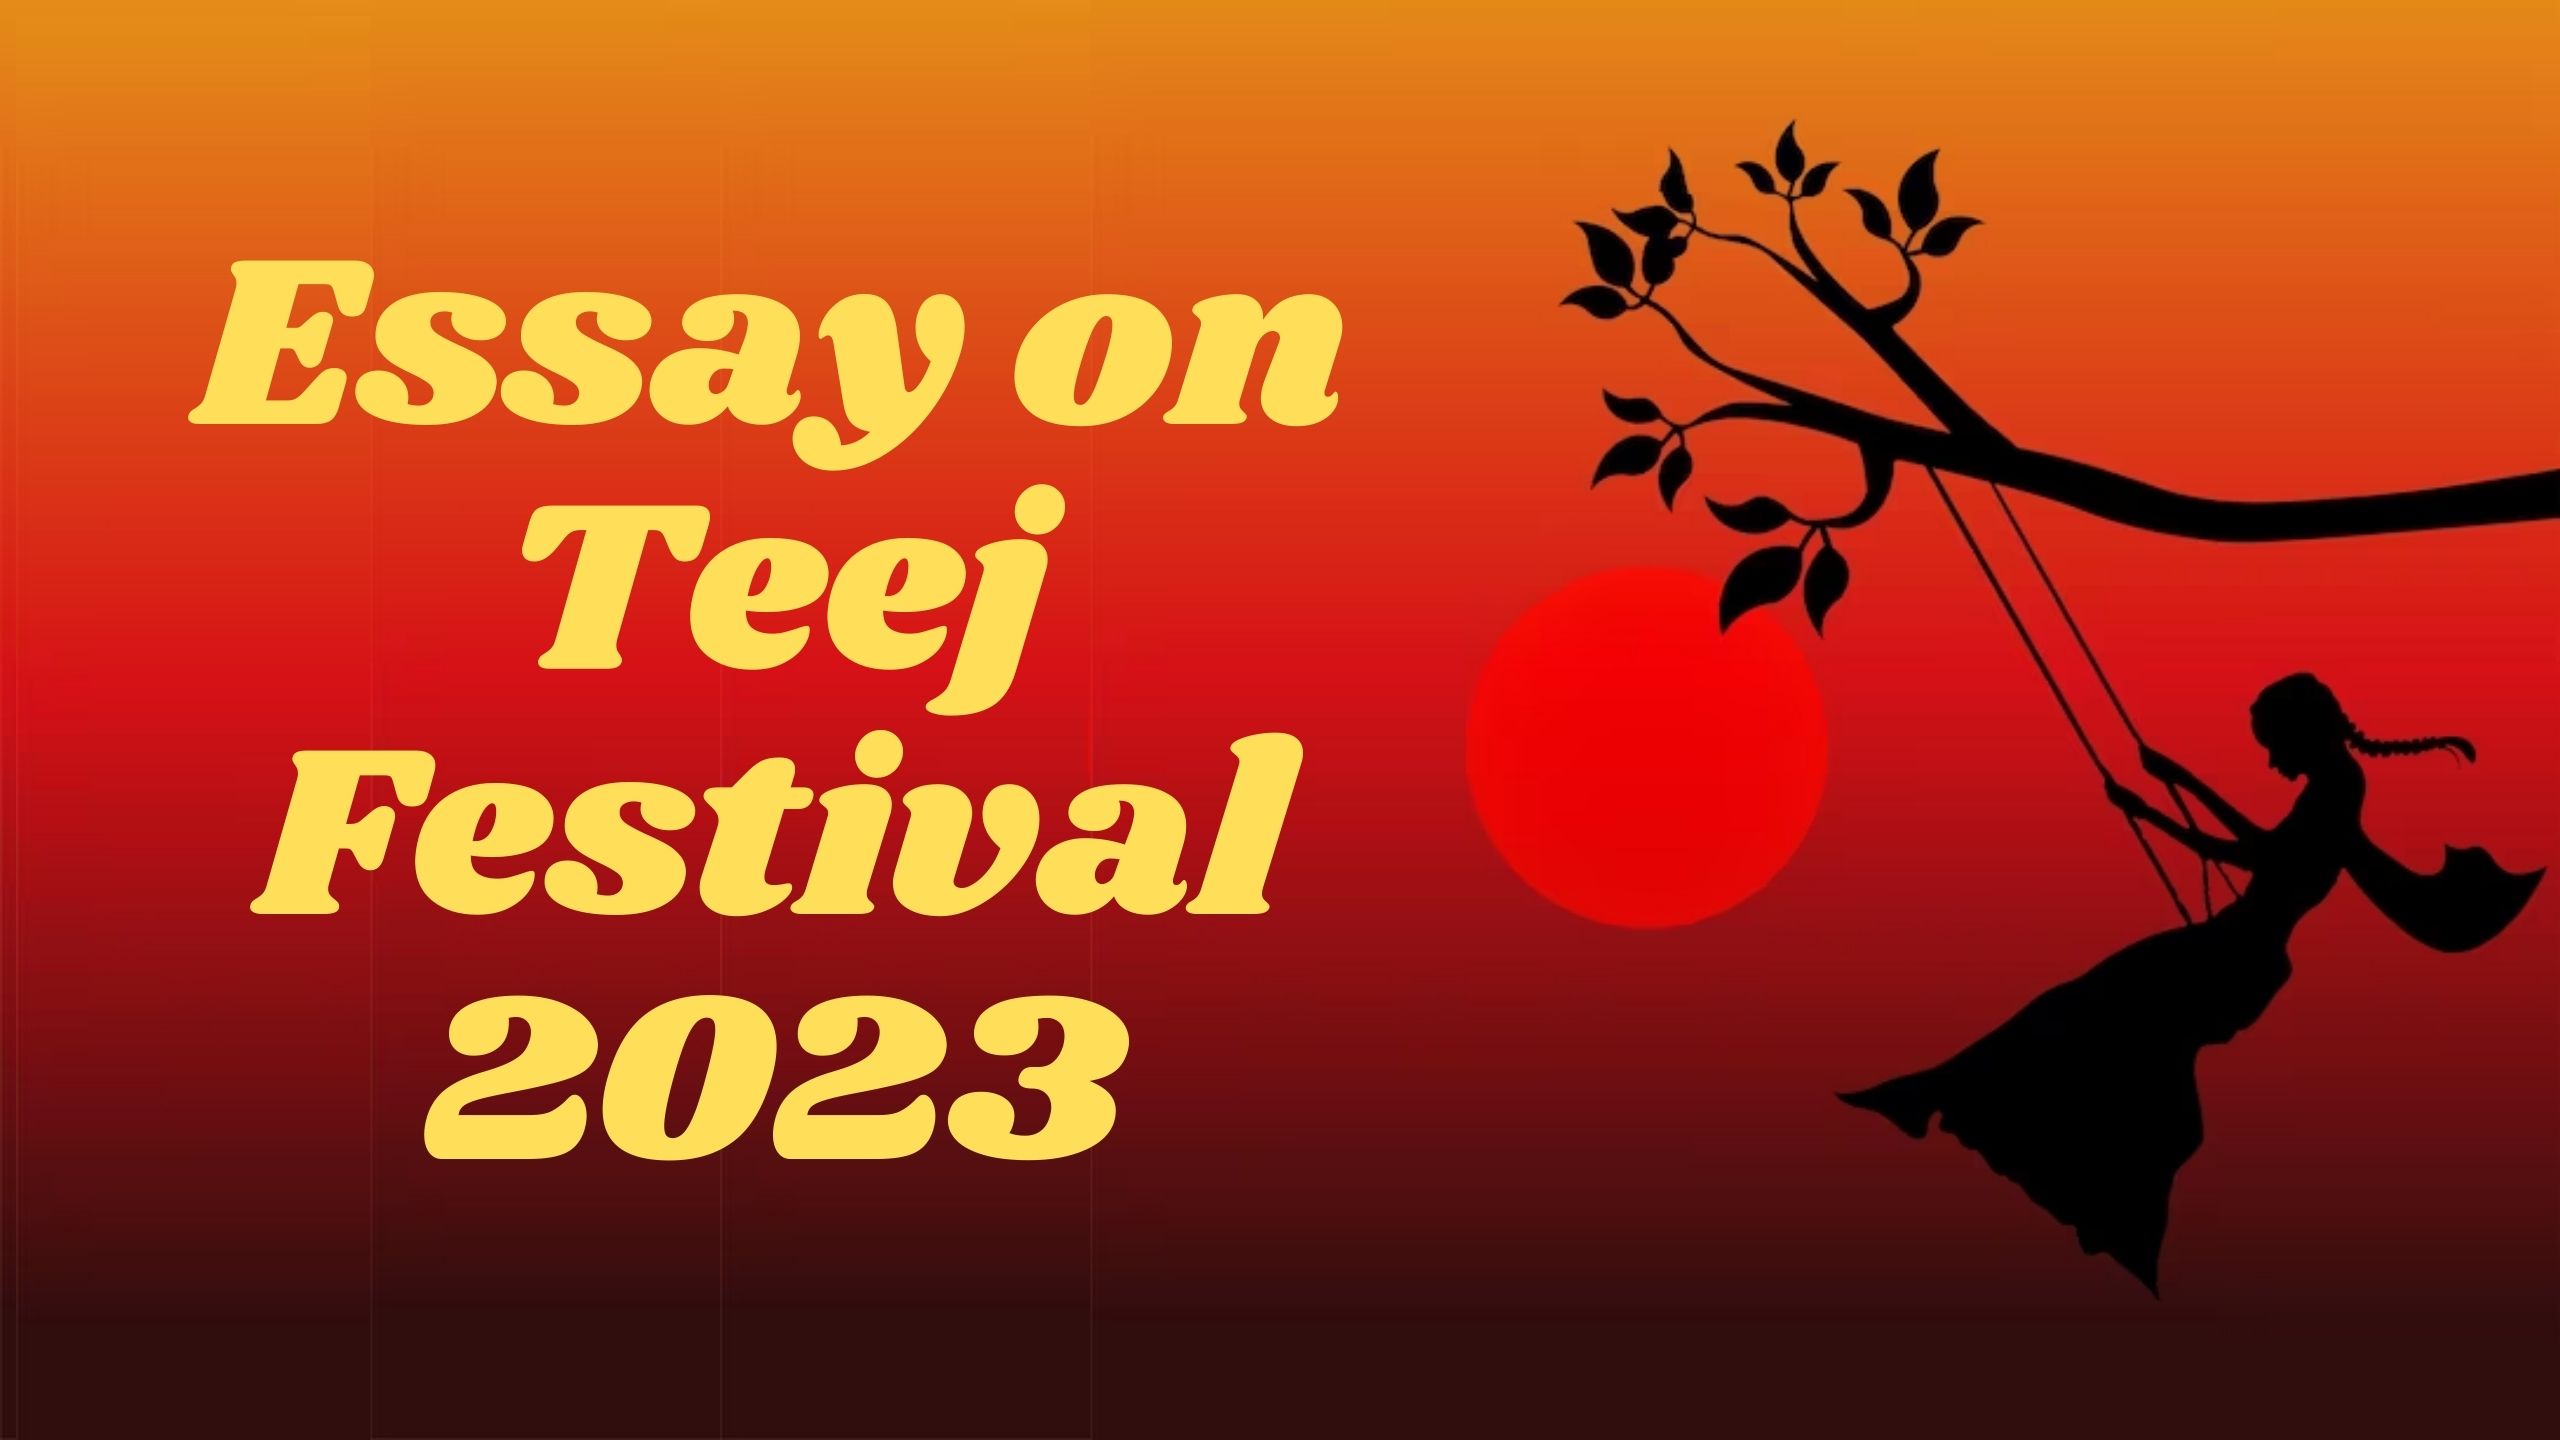 Essay on Teej Festival 2023